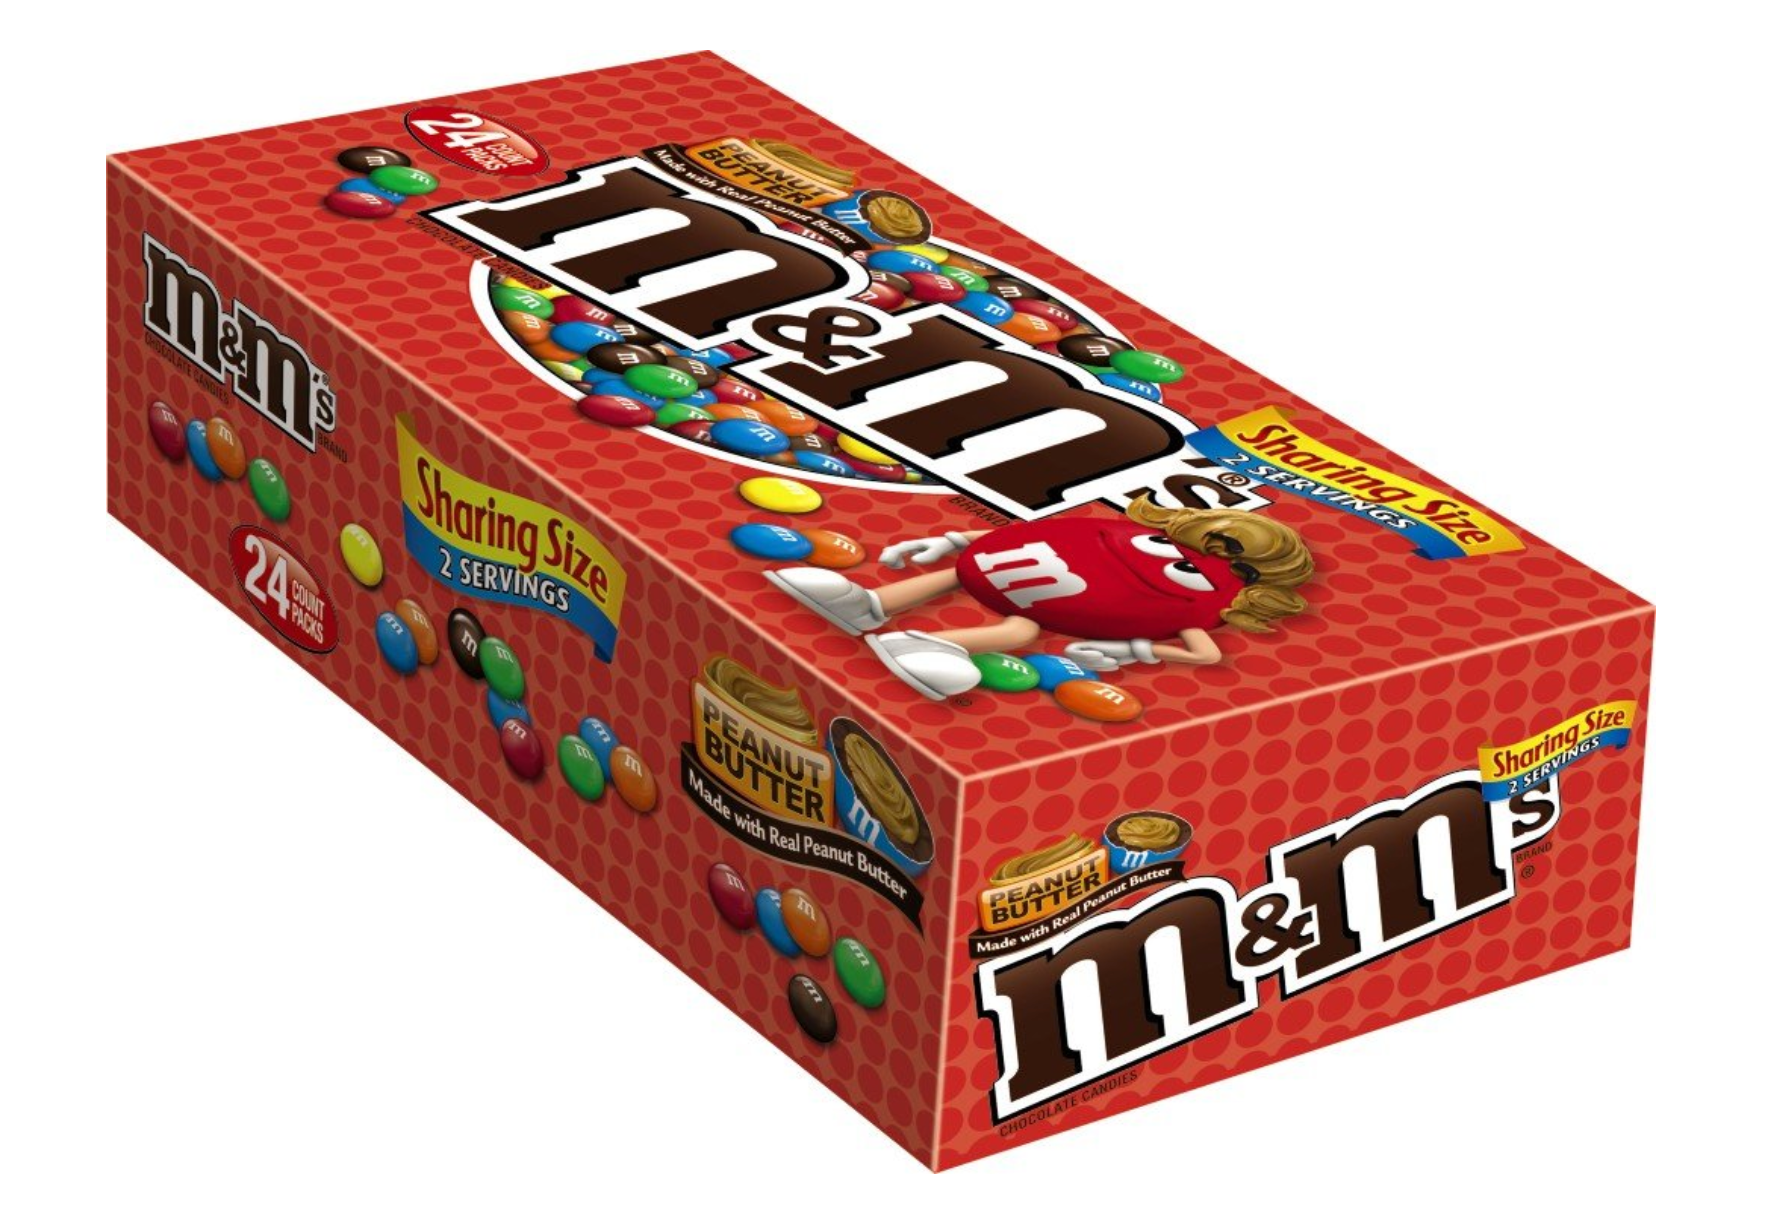 M&M's Peanut Chocolate Bulk Box, Chocolate Gifts 24 Packs of 45g